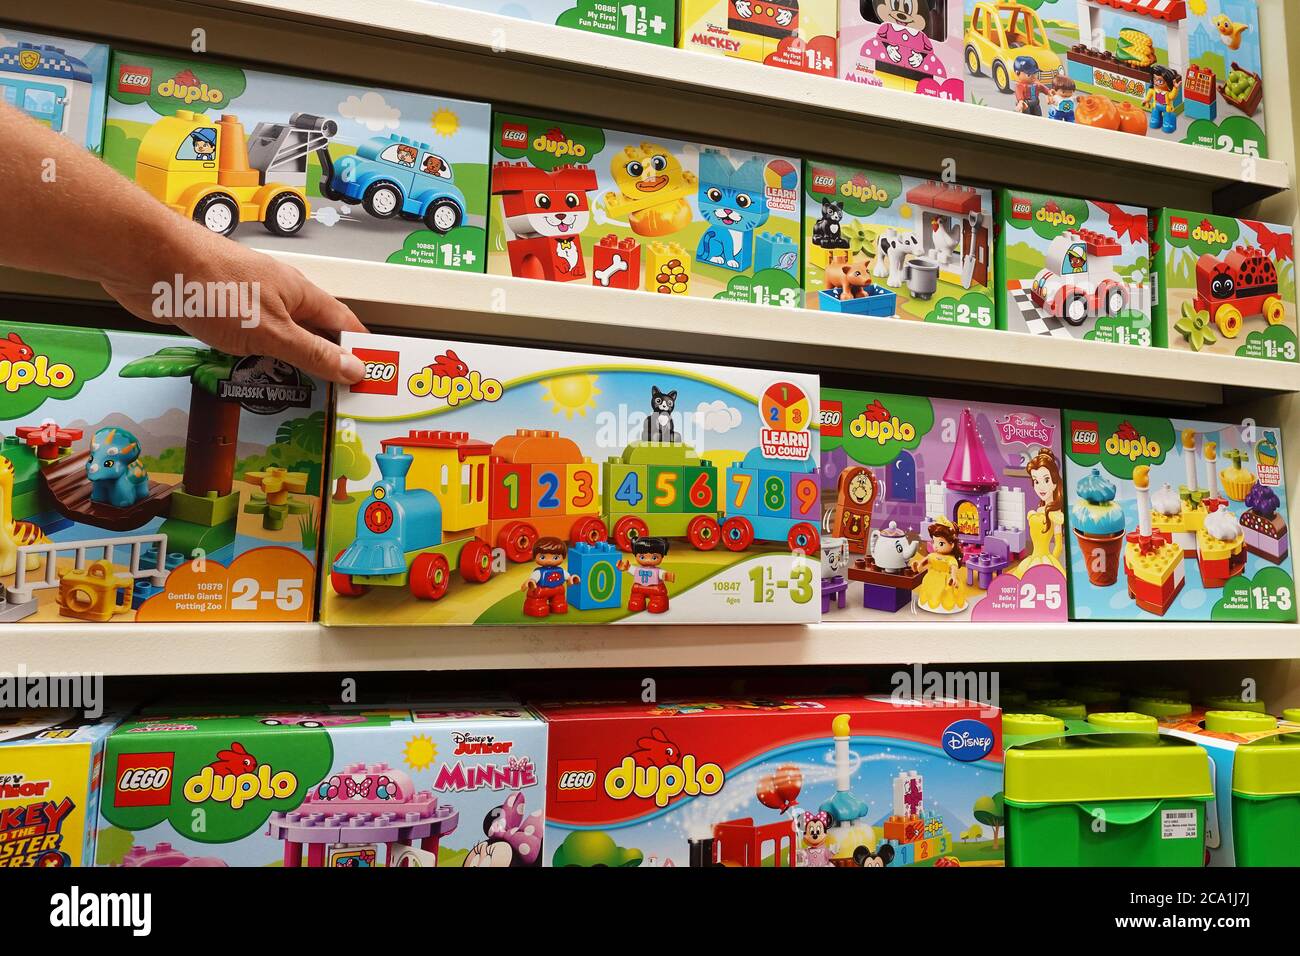 Les boîtes de Lego Duplo dans un magasin de jouets Banque D'Images